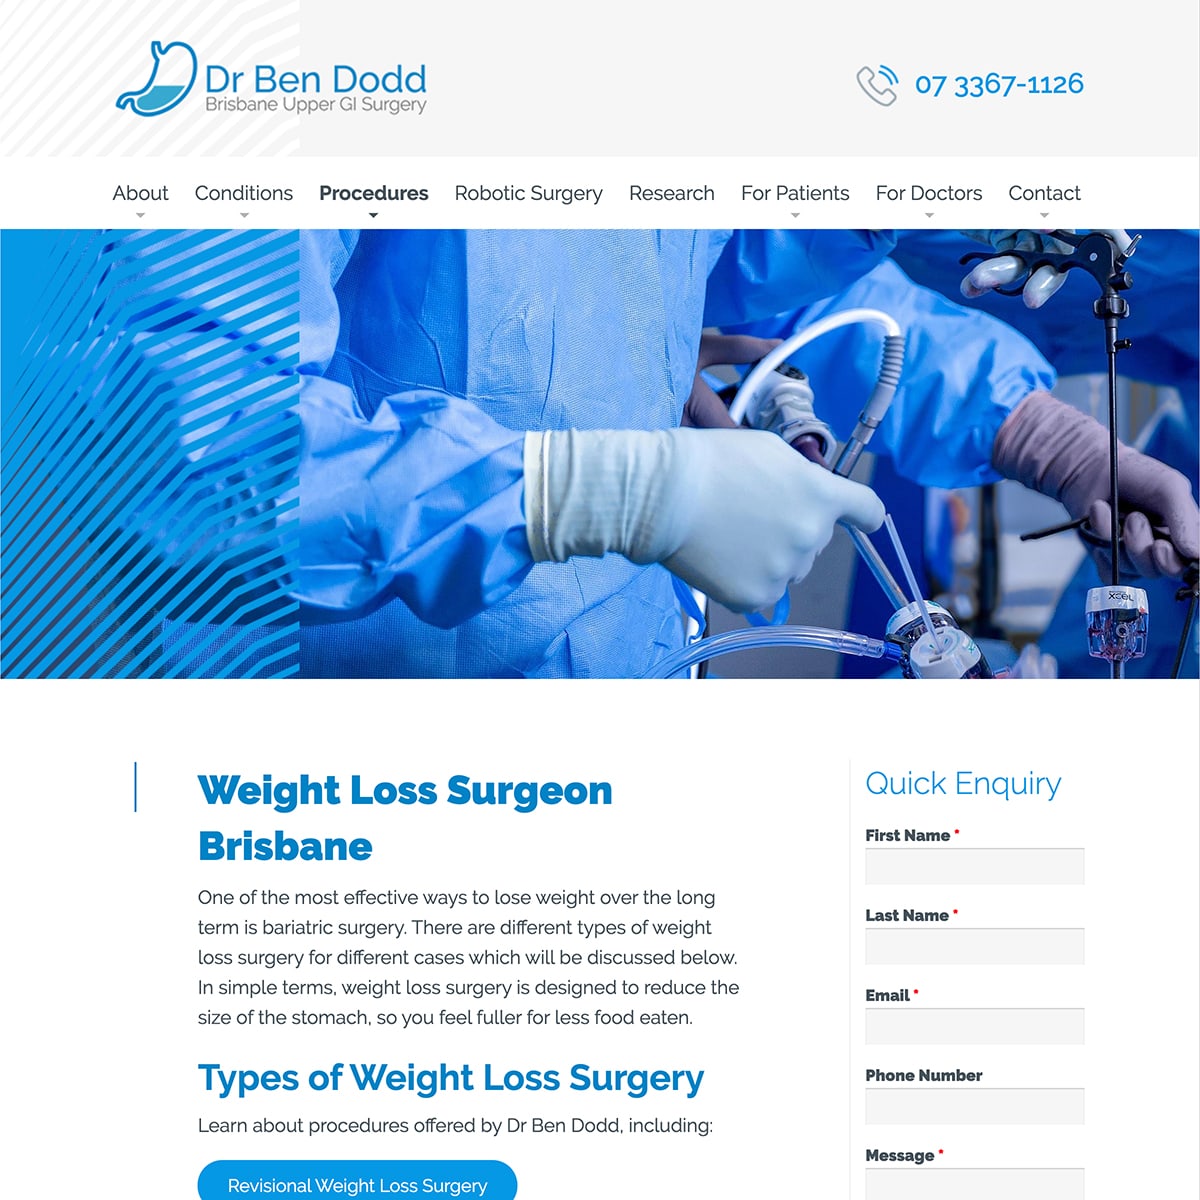 Dr Ben Dodd - Procedures